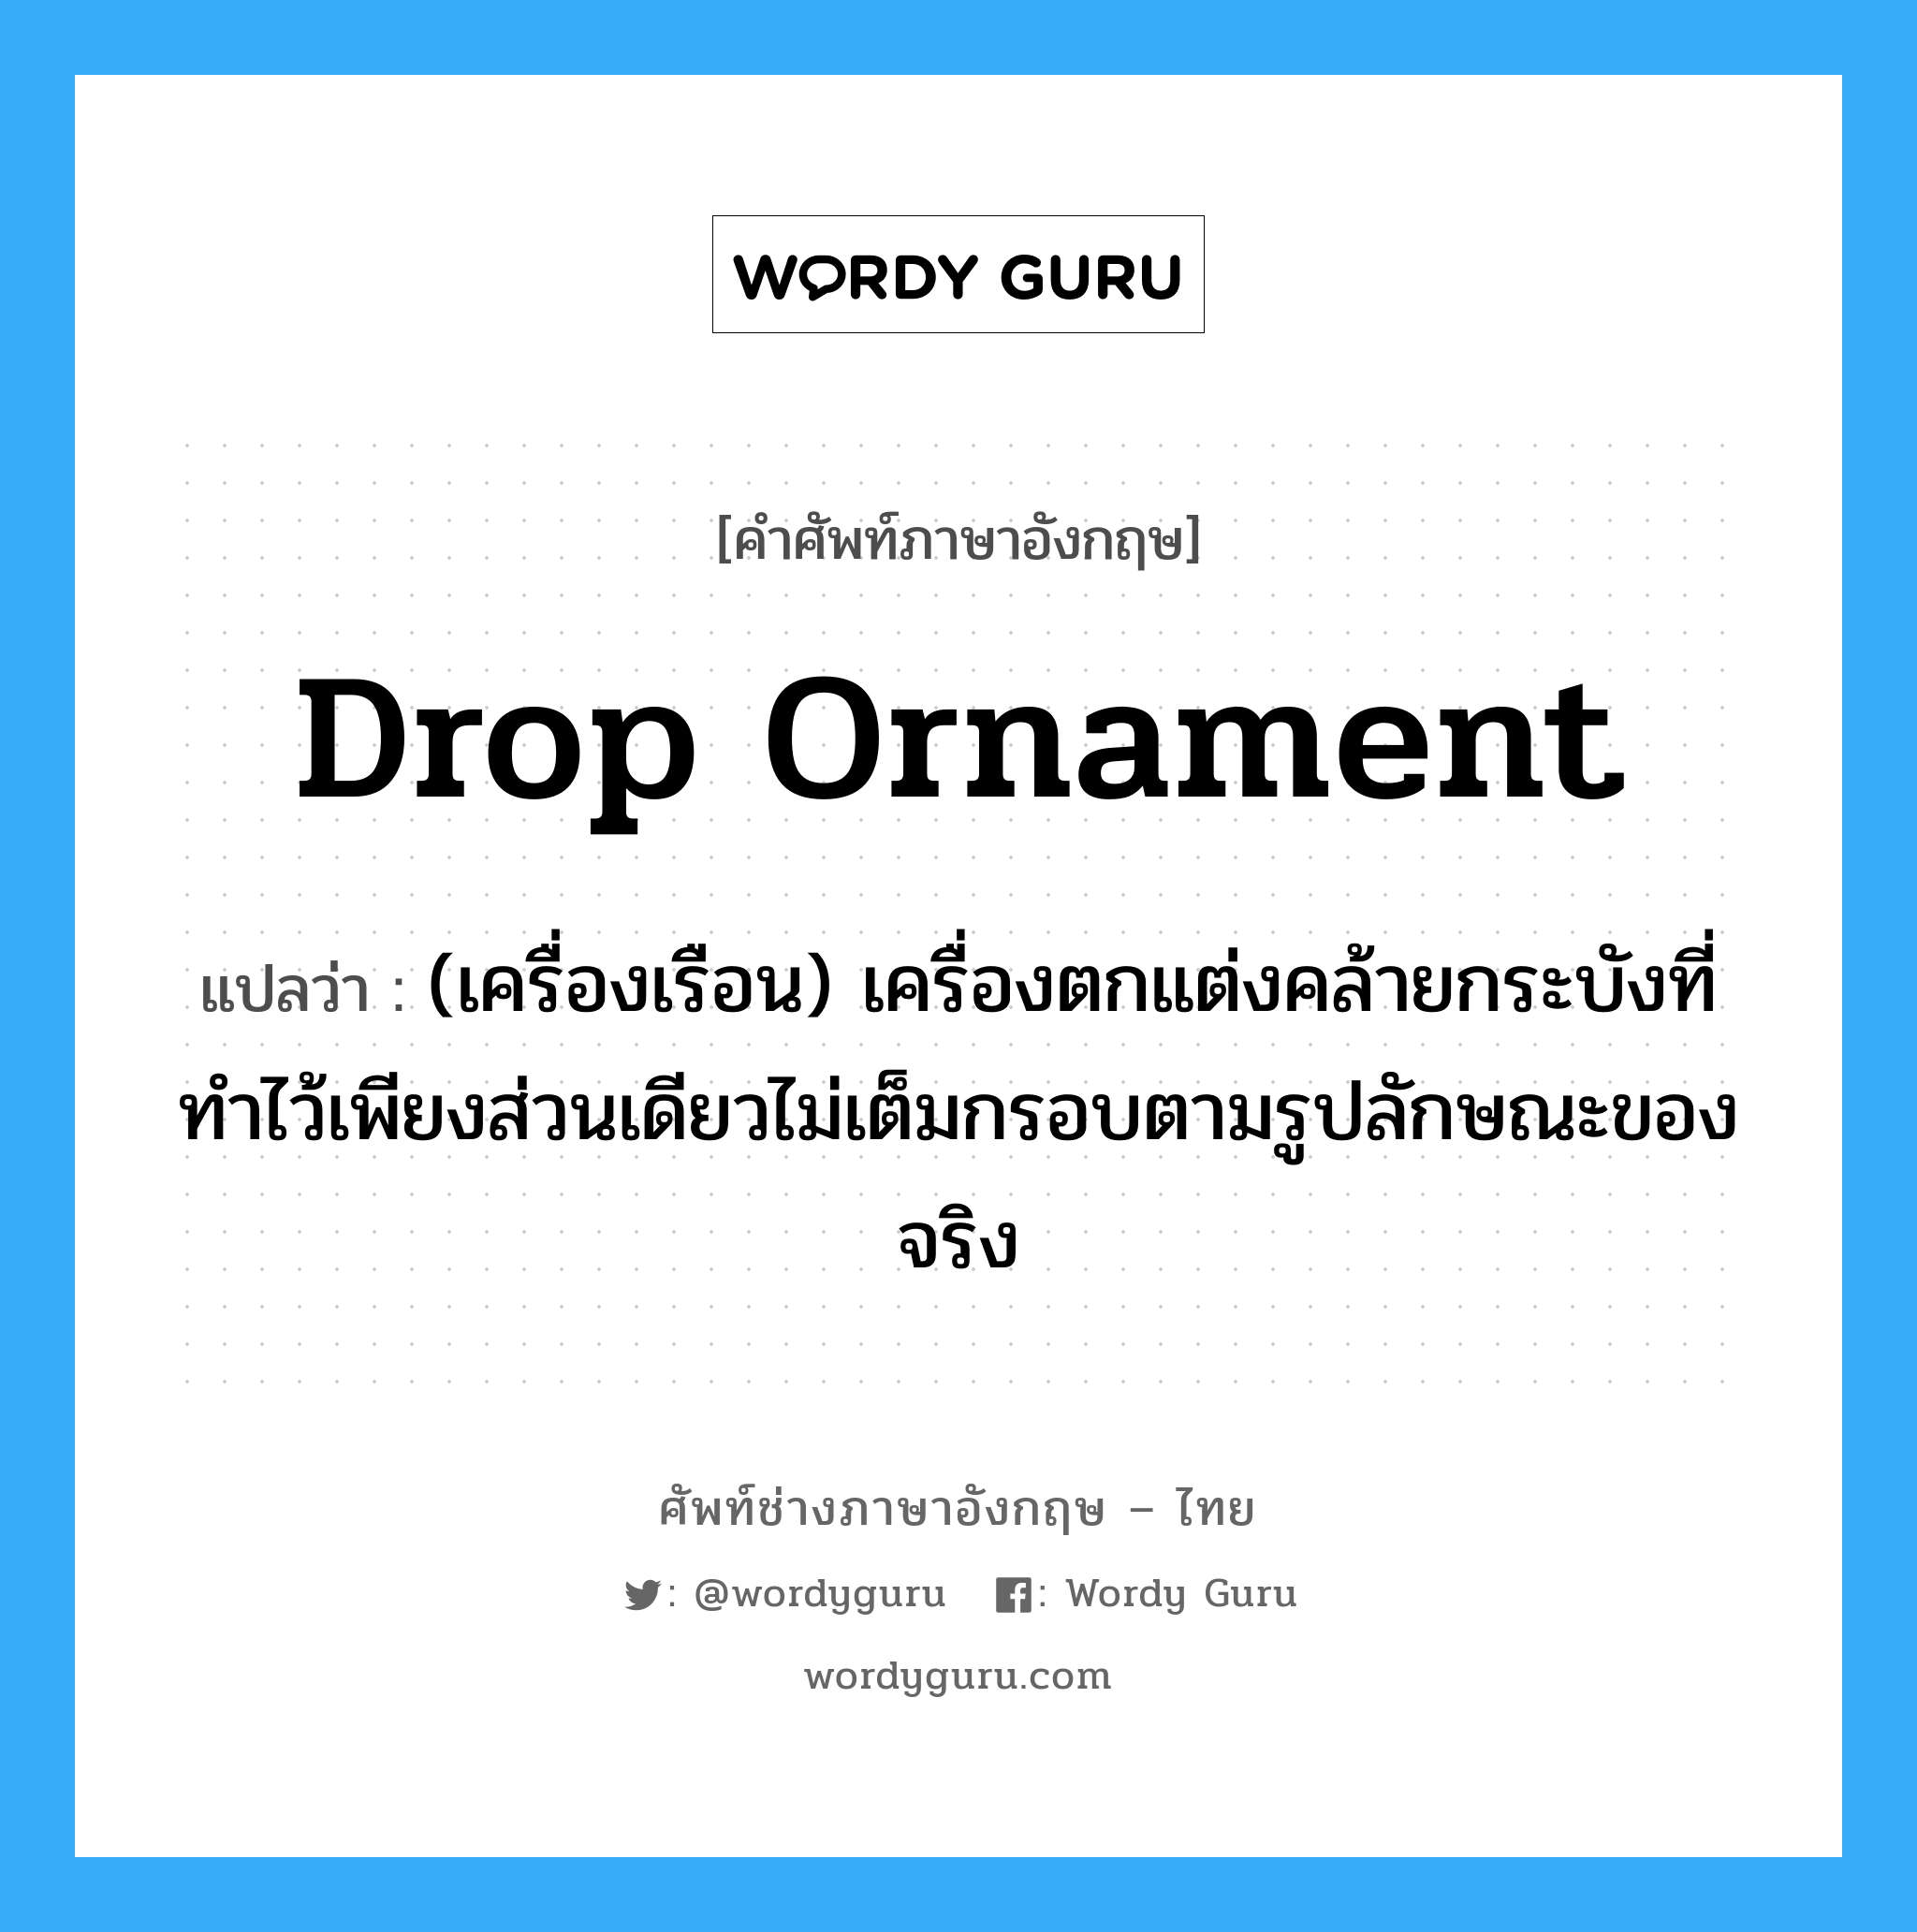 drop ornament แปลว่า?, คำศัพท์ช่างภาษาอังกฤษ - ไทย drop ornament คำศัพท์ภาษาอังกฤษ drop ornament แปลว่า (เครื่องเรือน) เครื่องตกแต่งคล้ายกระบังที่ทำไว้เพียงส่วนเดียวไม่เต็มกรอบตามรูปลักษณะของจริง